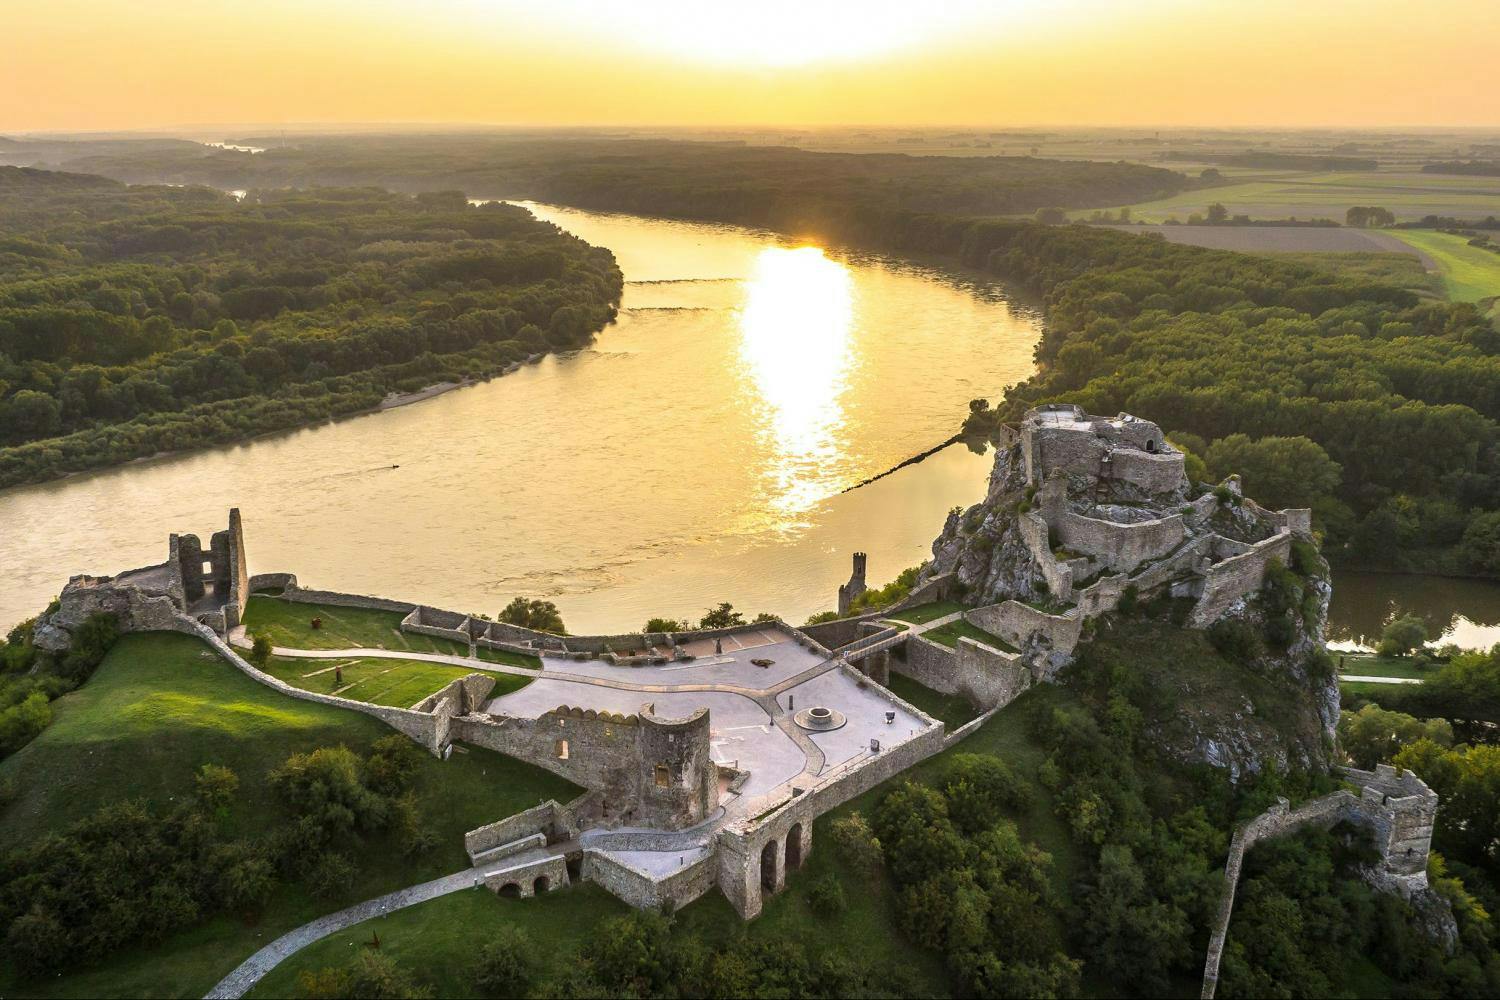 Visite de la grande ville de Bratislava avec le château de Devin